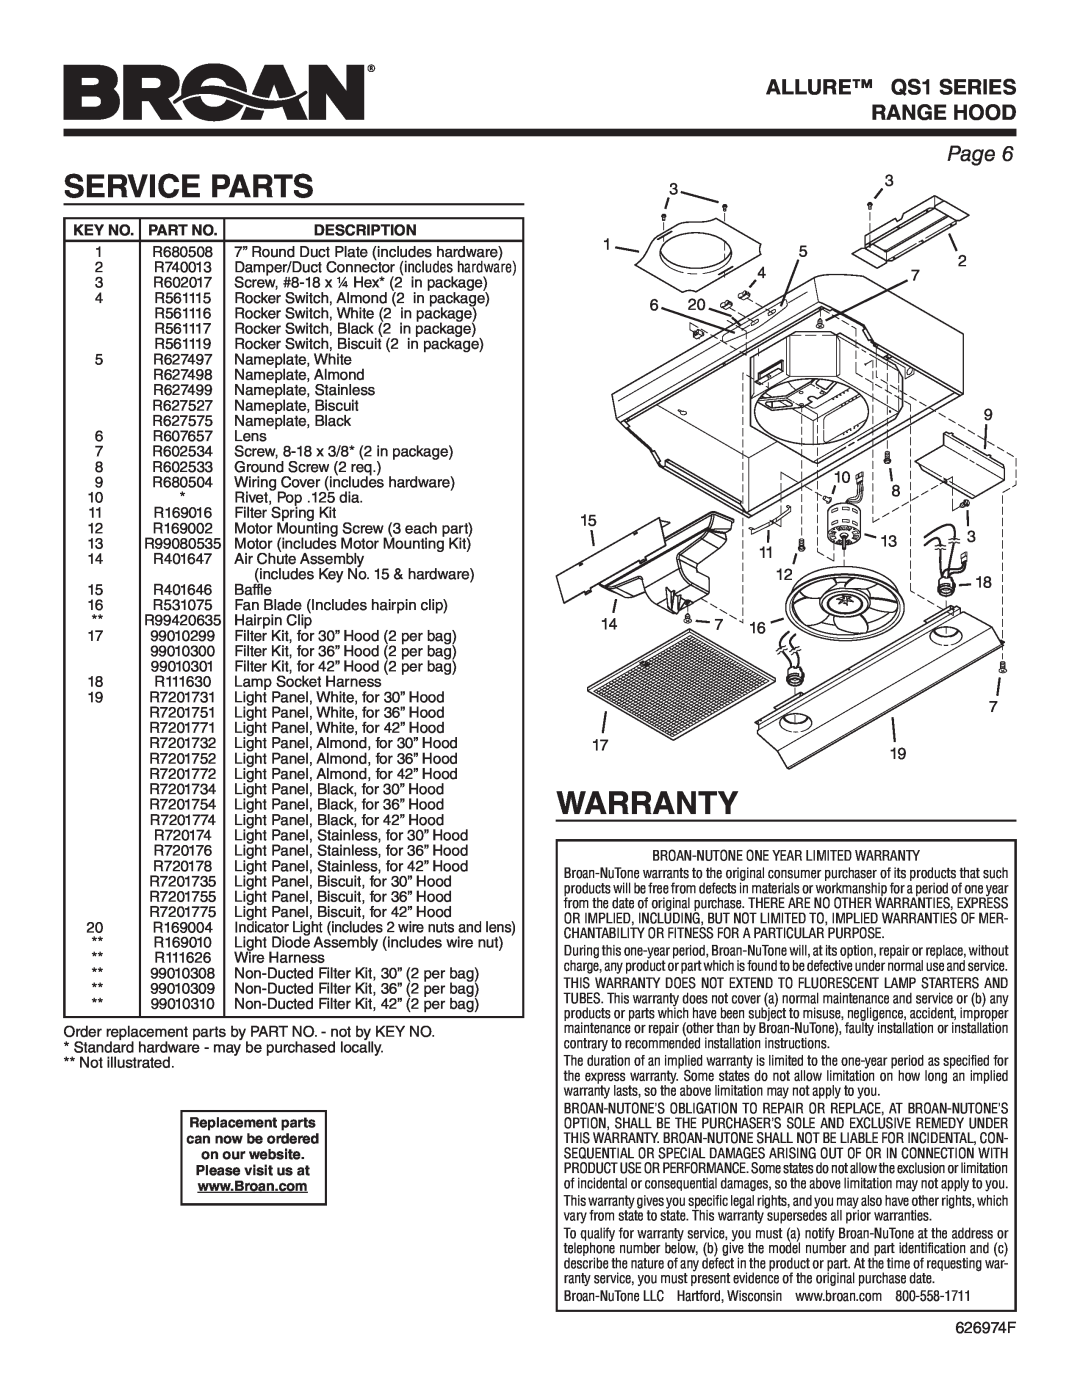 Broan QS130BL, QS130WW, QS136BL Service Parts, Warranty, ALLURE QS1 SERIES RANGE HOOD, Page, Key No. Part No, Description 